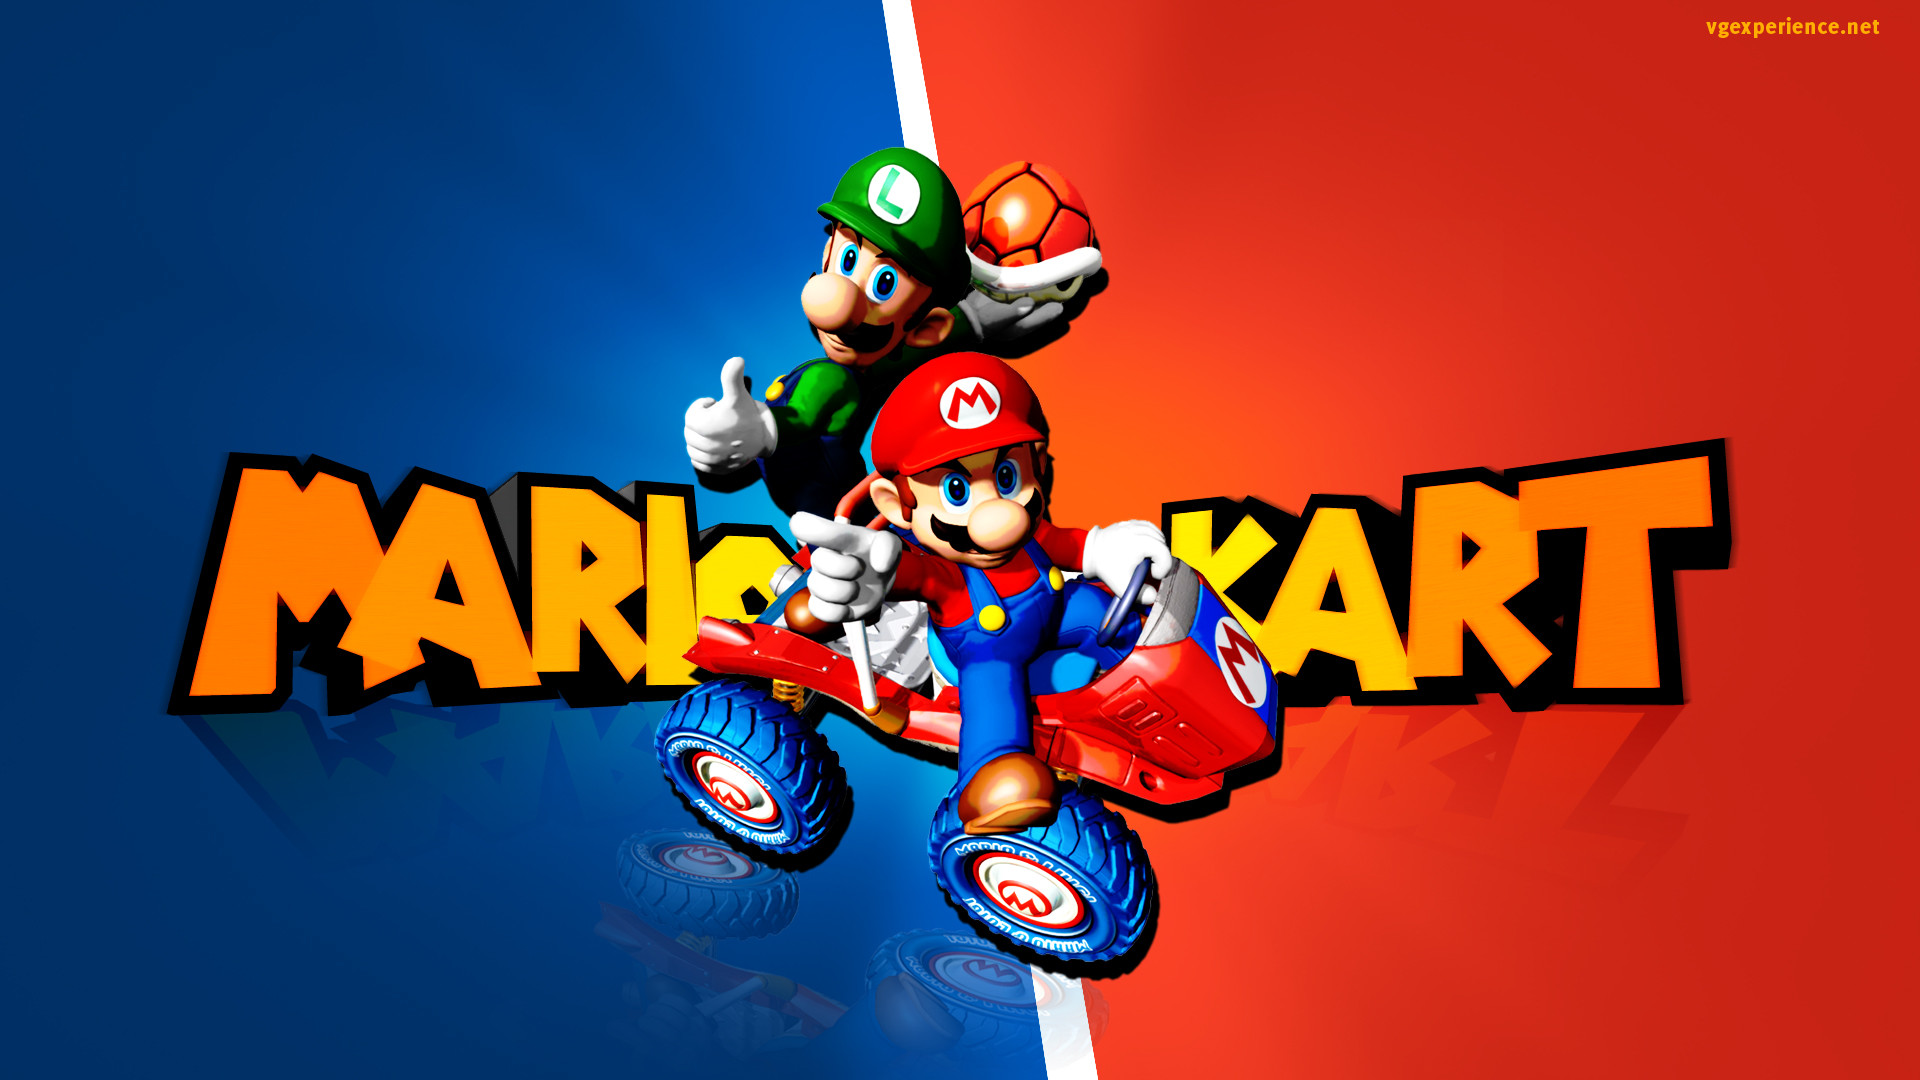 1920x1080 Mario Kart 8 Wallpaper HD - WallpaperSafari